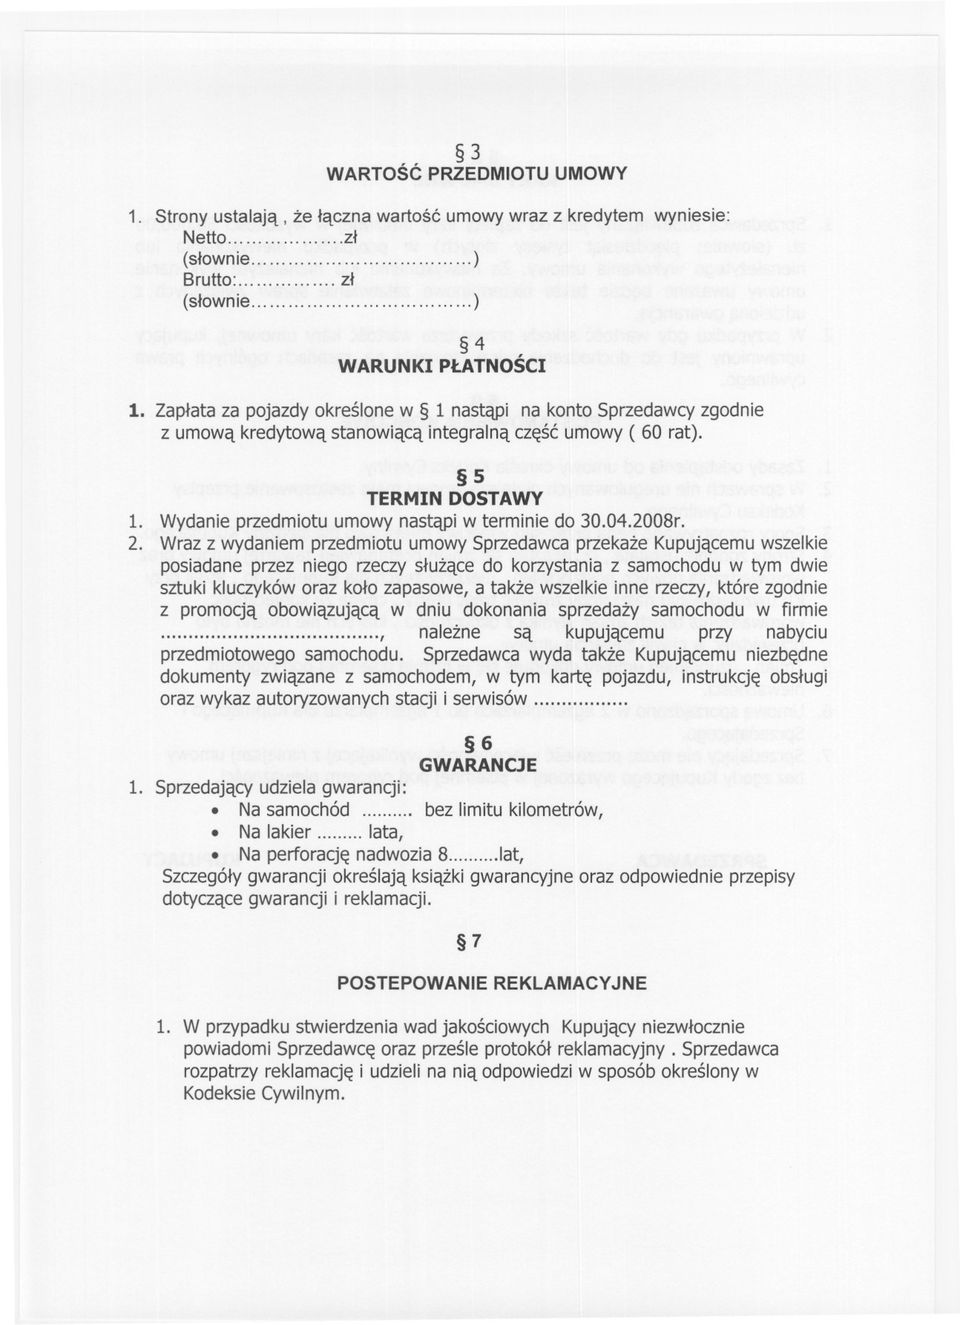 5 TERMIN DOSTAWY 1. Wydanie przedmiotu umowy nastapi w terminie do 30.04.2008r. 2.